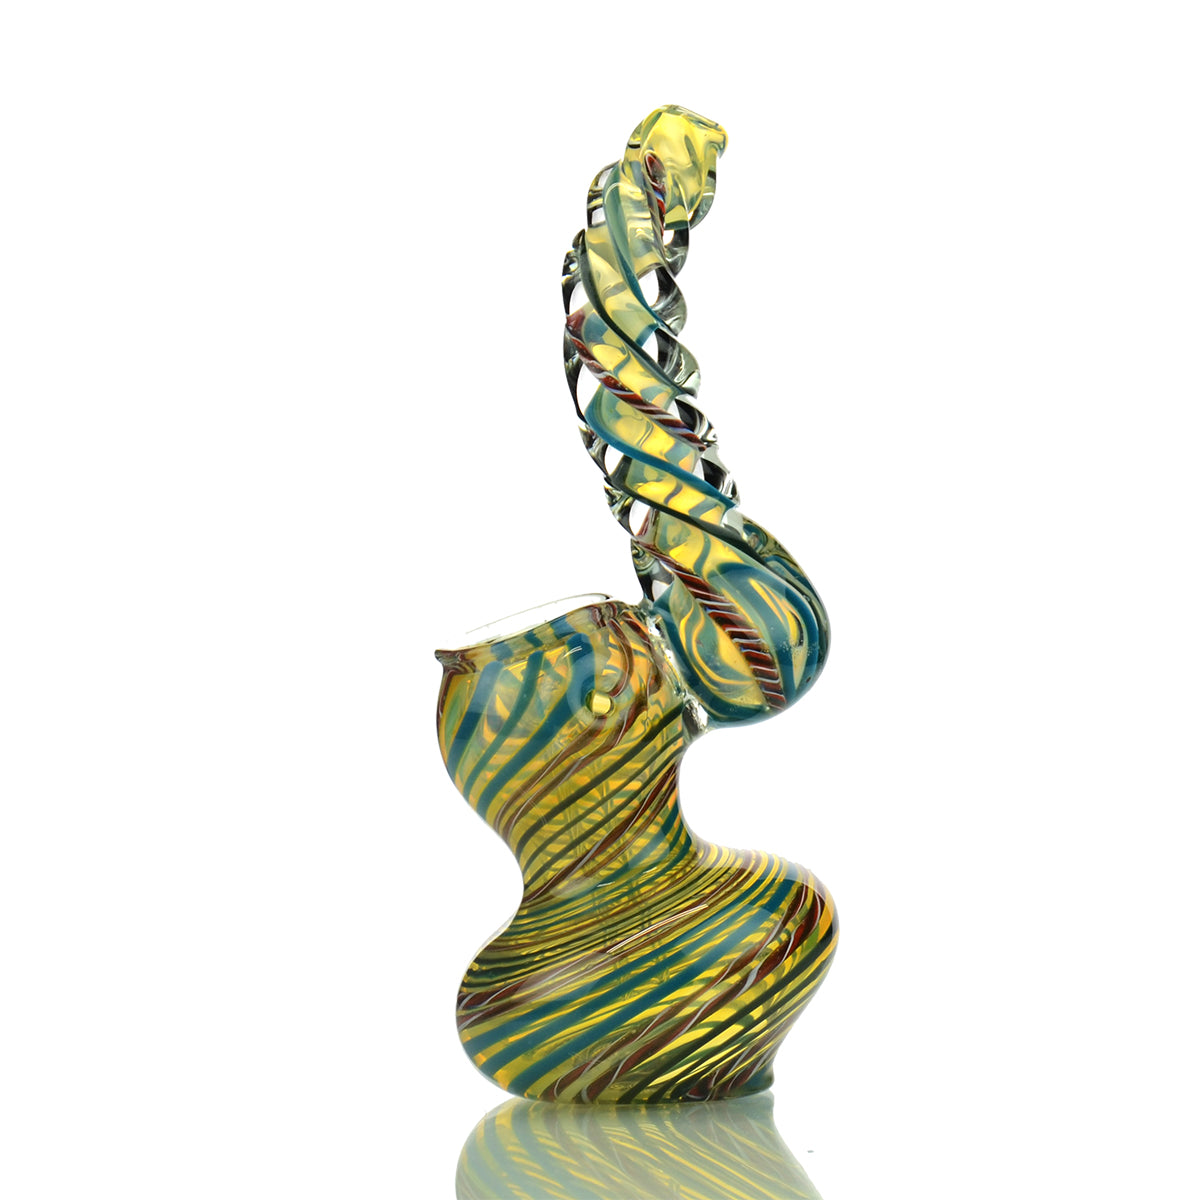 5" Sherlock Bubbler Swirling Art with Twisted Mouth Design - LA Wholesale Kings